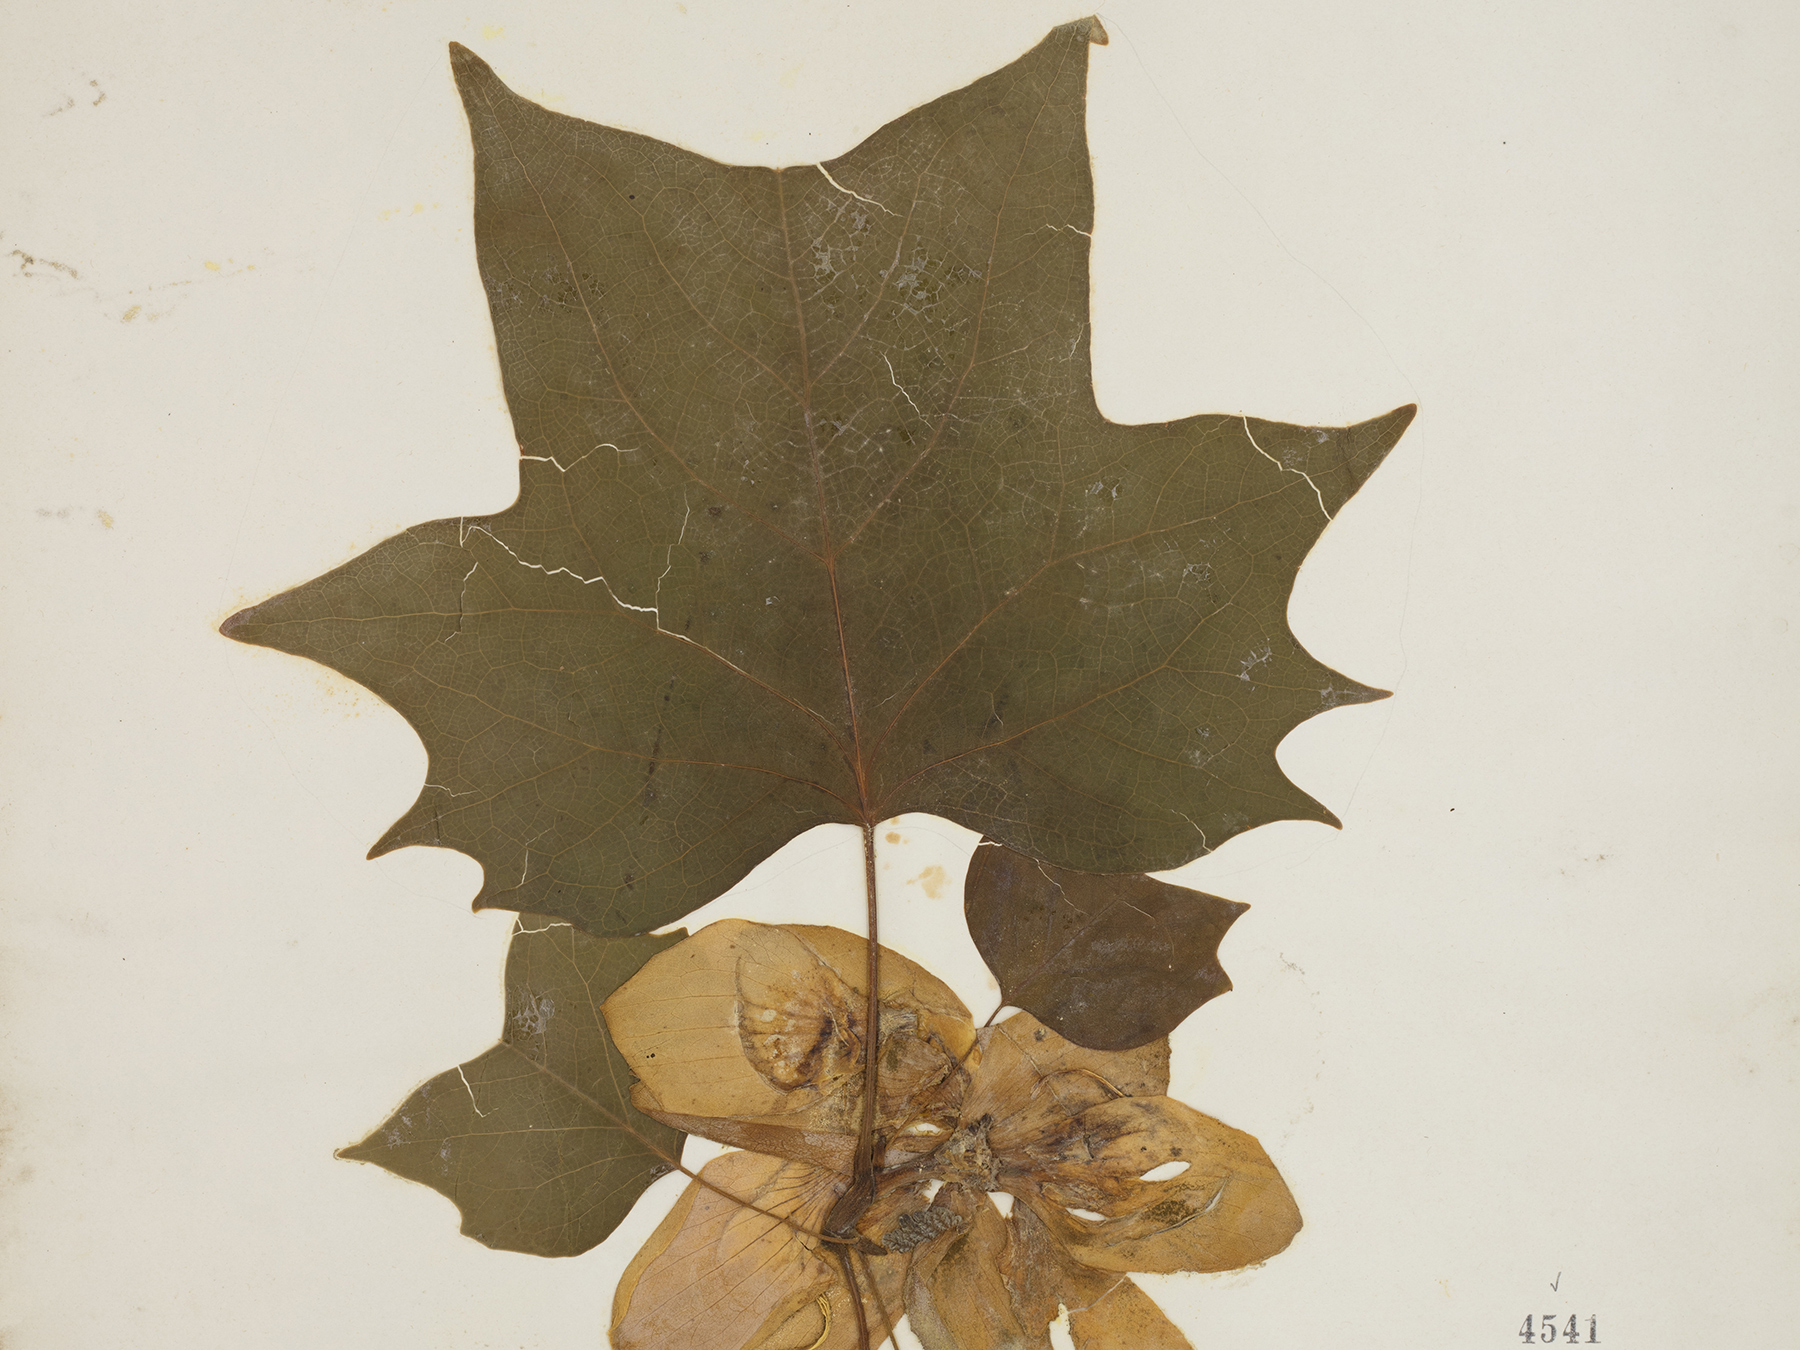 Herbarium specimen of a tulip poplar leaf